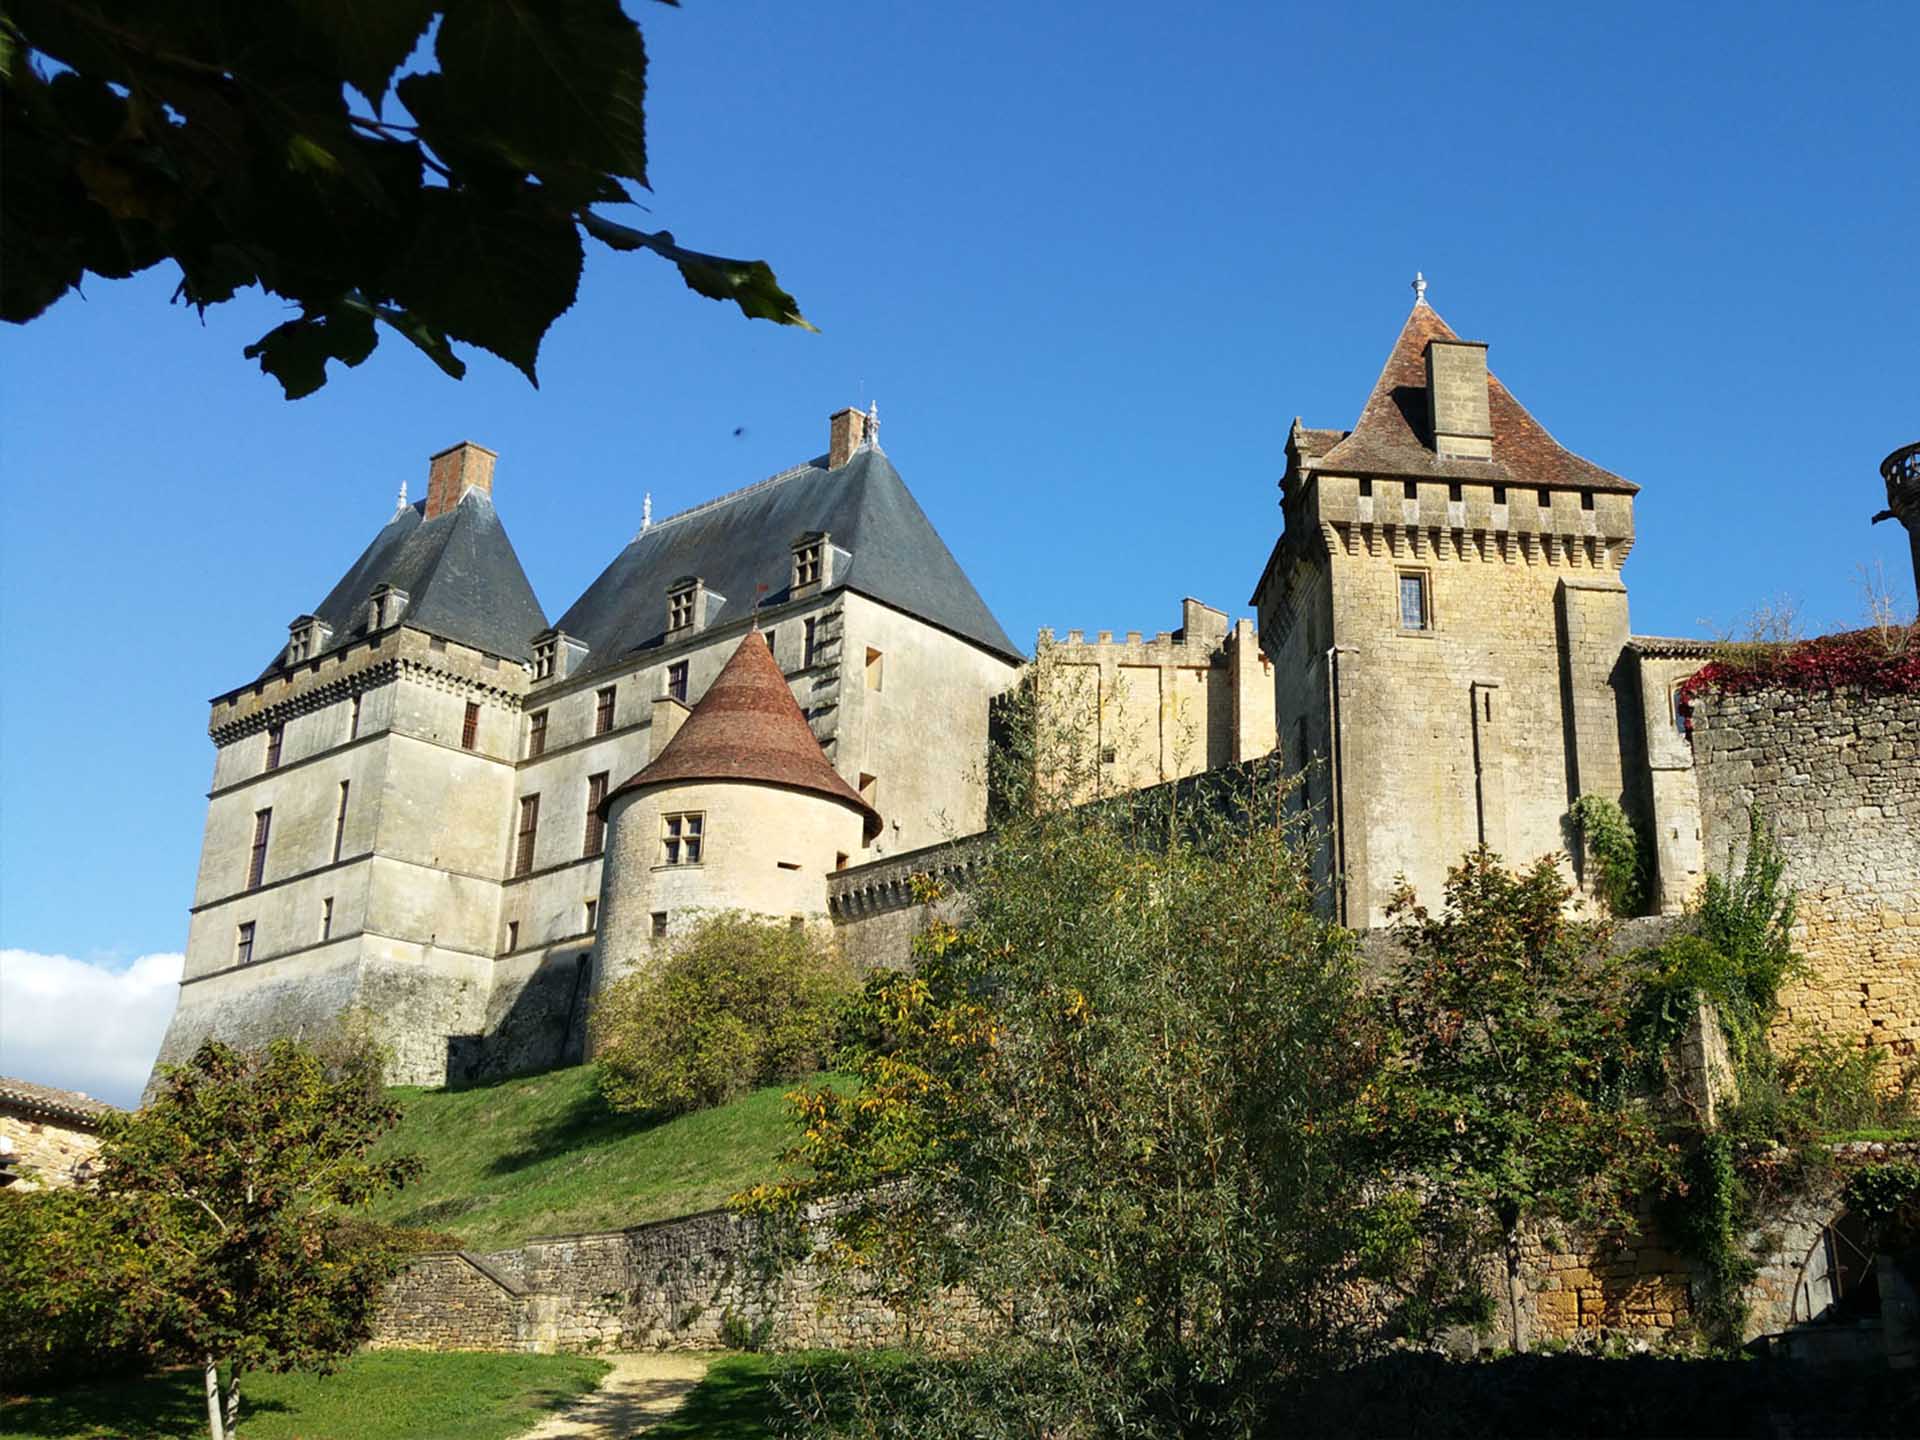 Le Chateau de Biron